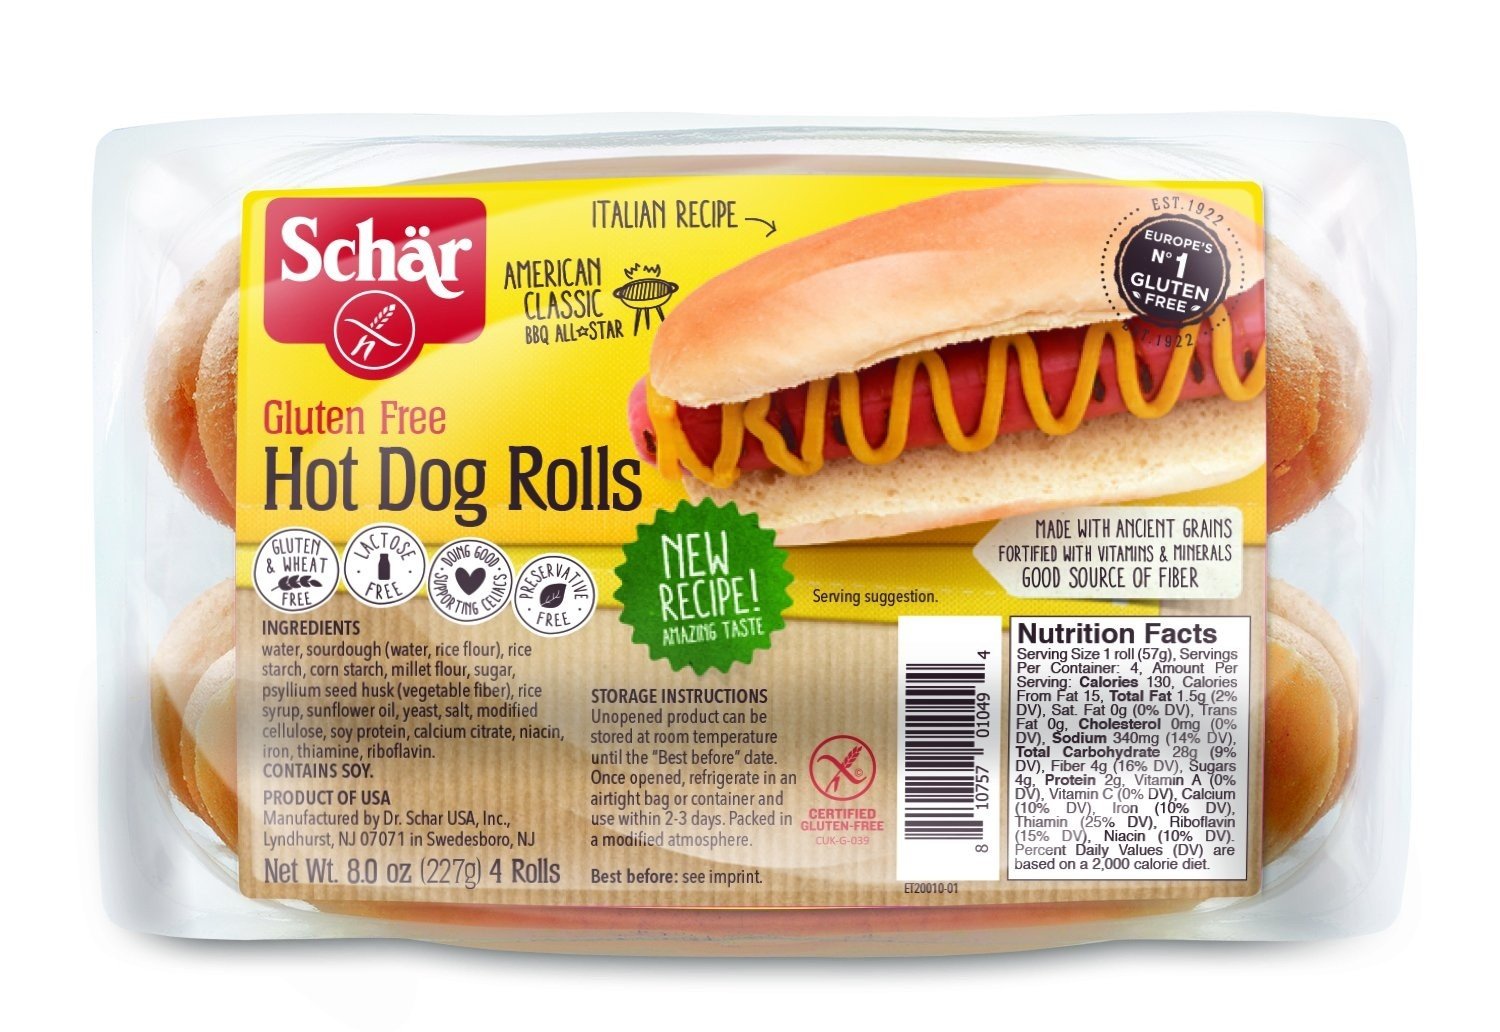 Gluten Free Hot Dog Rolls by Schar